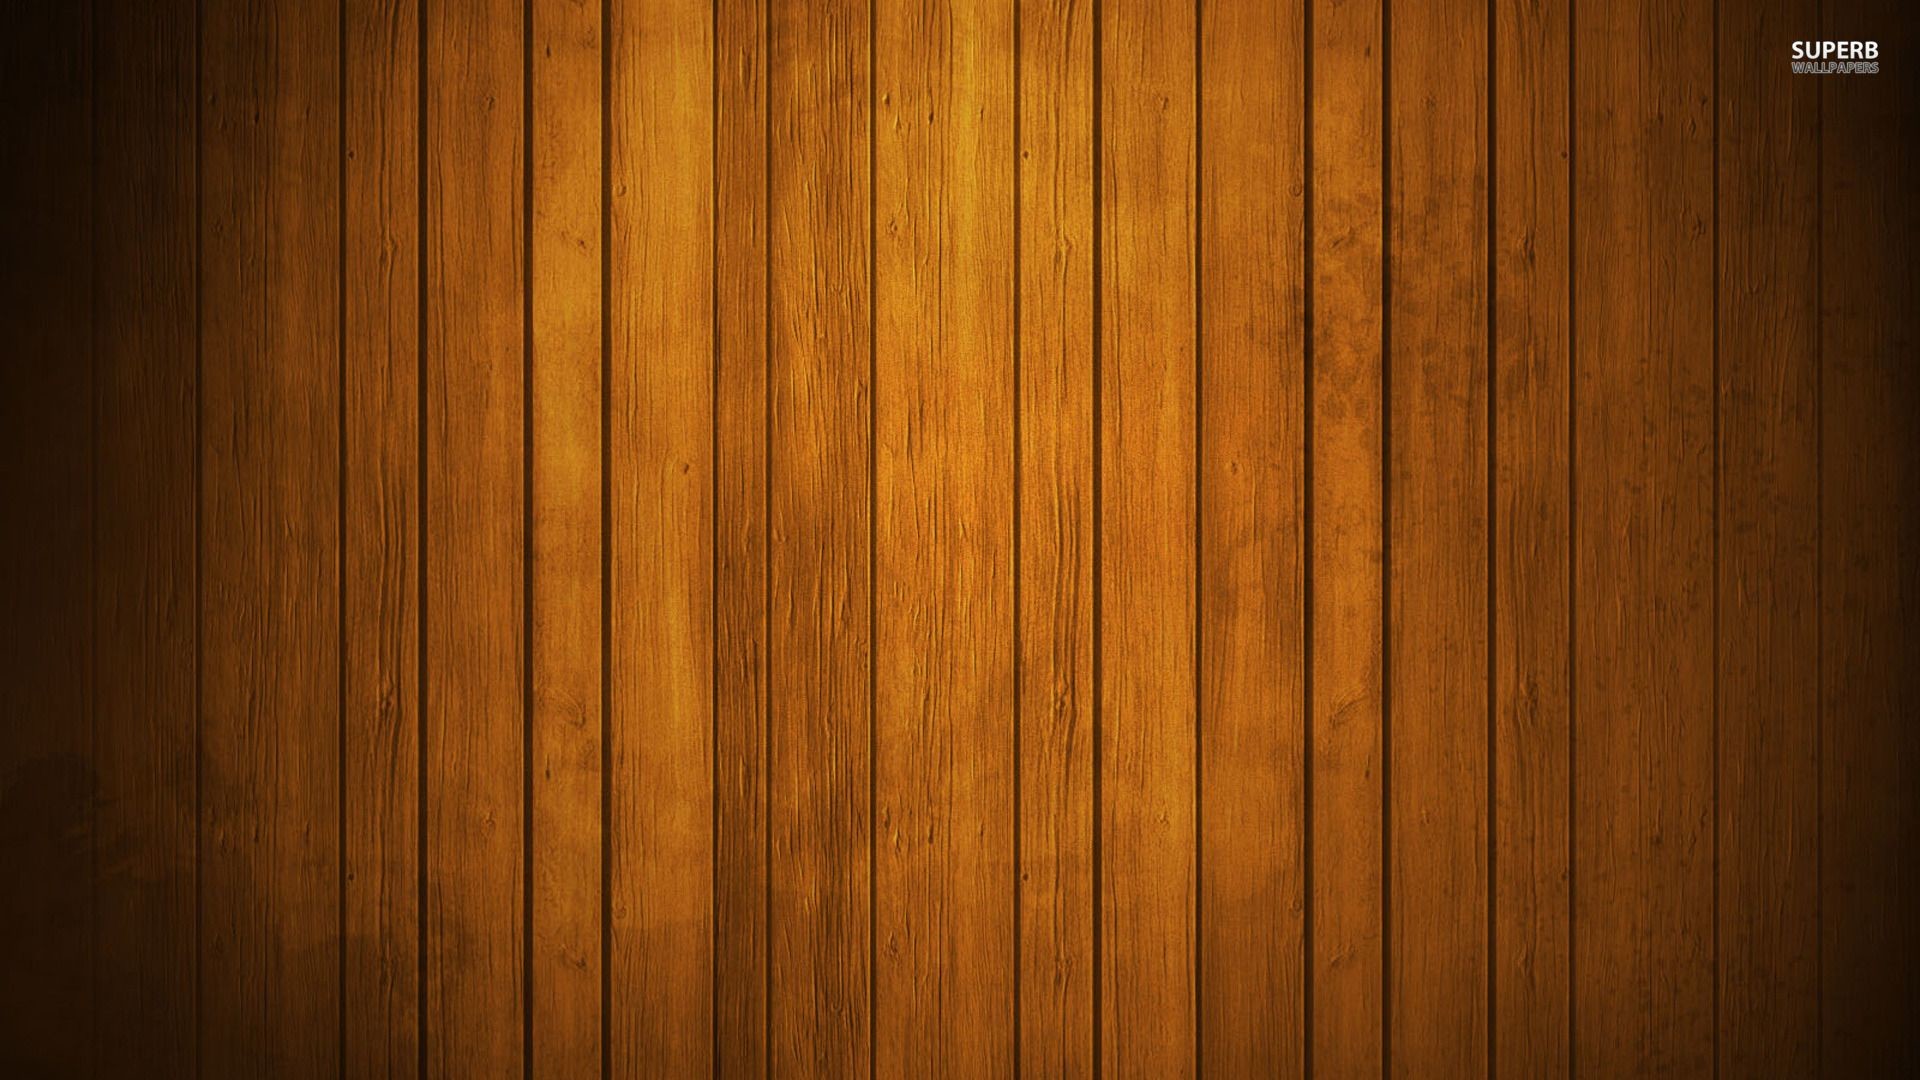 Với hình nền gỗ HD, bạn sẽ được thỏa sức khám phá các chi tiết tinh tế của chất liệu gỗ. Chất lượng hình ảnh cực kỳ sắc nét và tươi sáng, đến mức bạn có thể cảm nhận được cảm giác thật sự của mẫu gỗ đó.